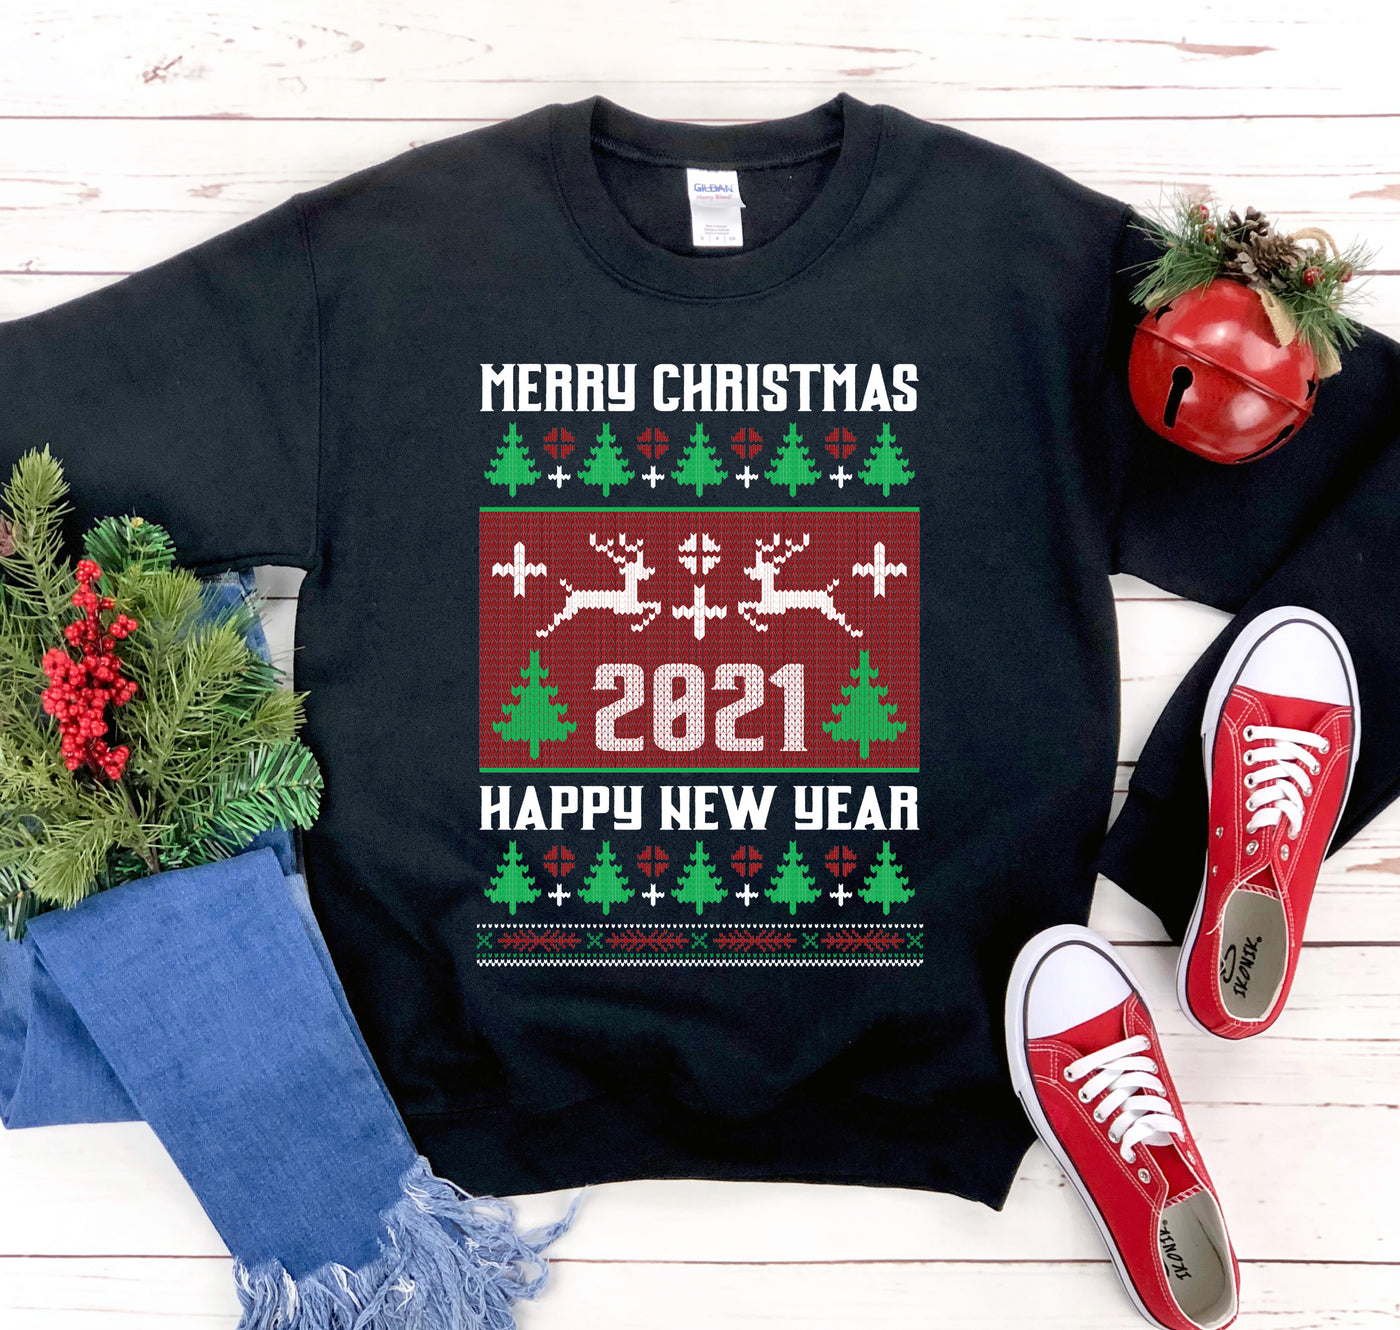 Merry Christmas Sweatshirt - WishBest